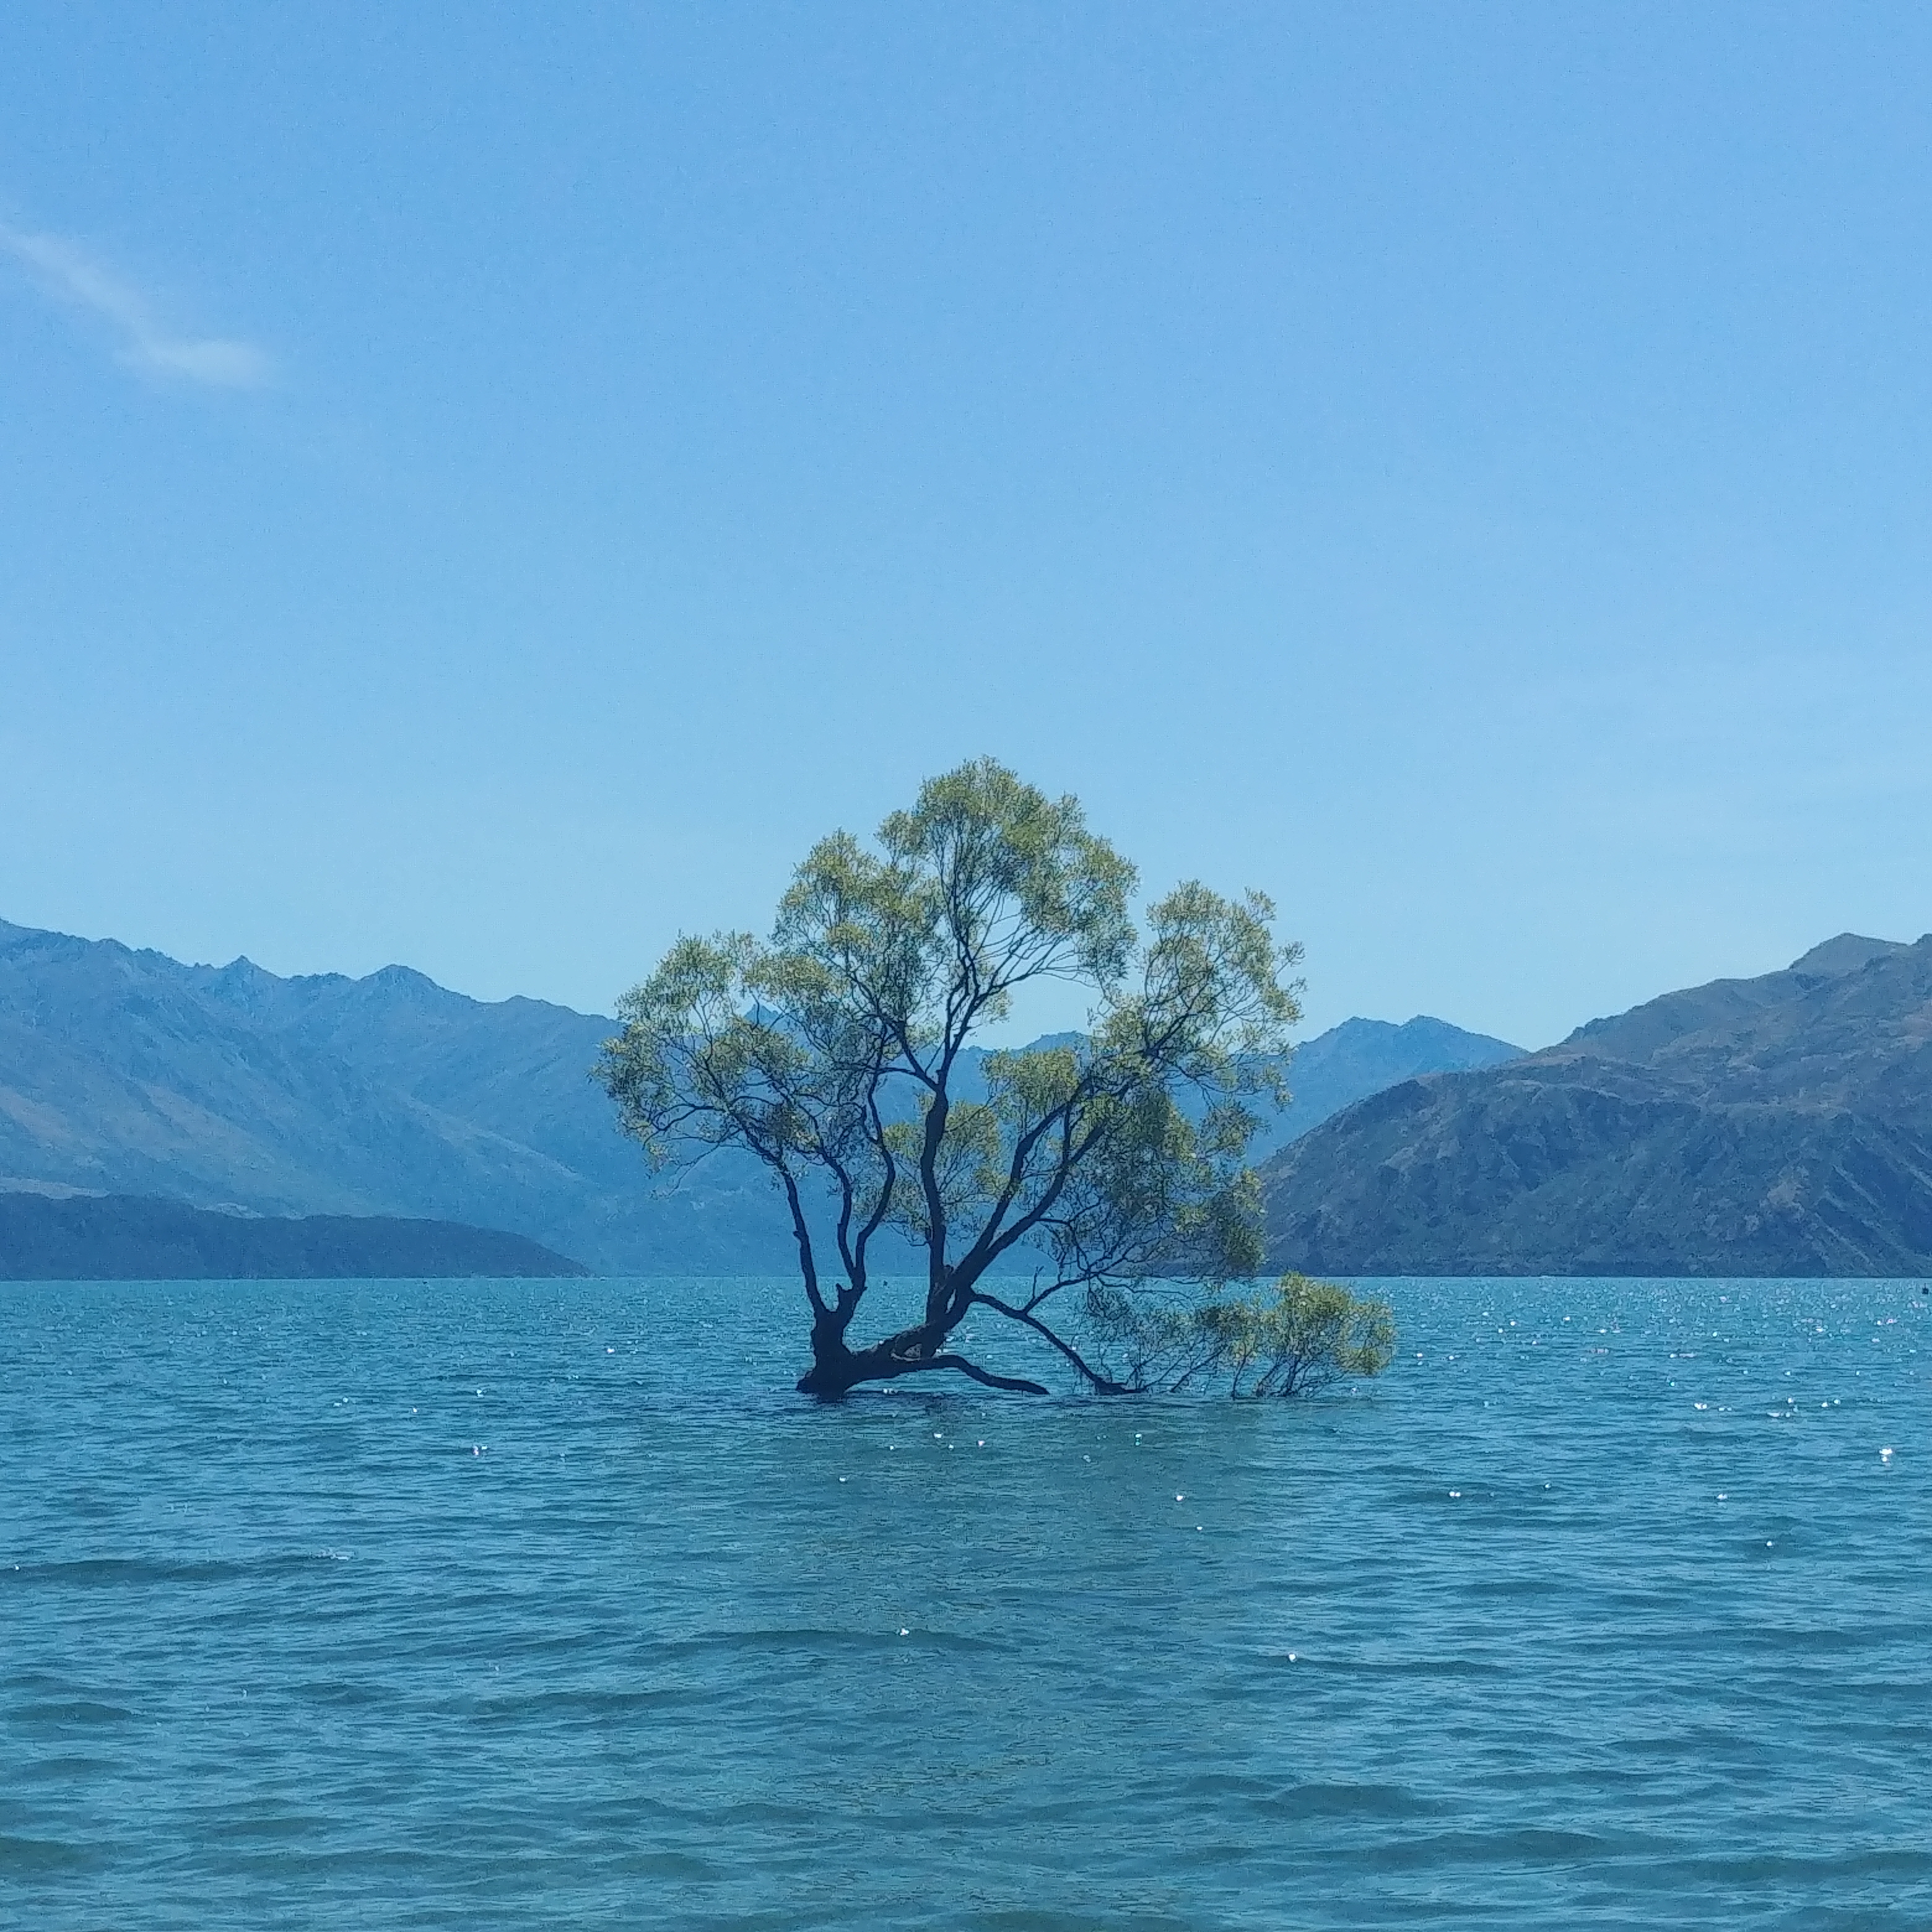 뉴질랜드 와나카 나무 #ThatWanakaTree (톱질로 훼손된 와나카 나무)